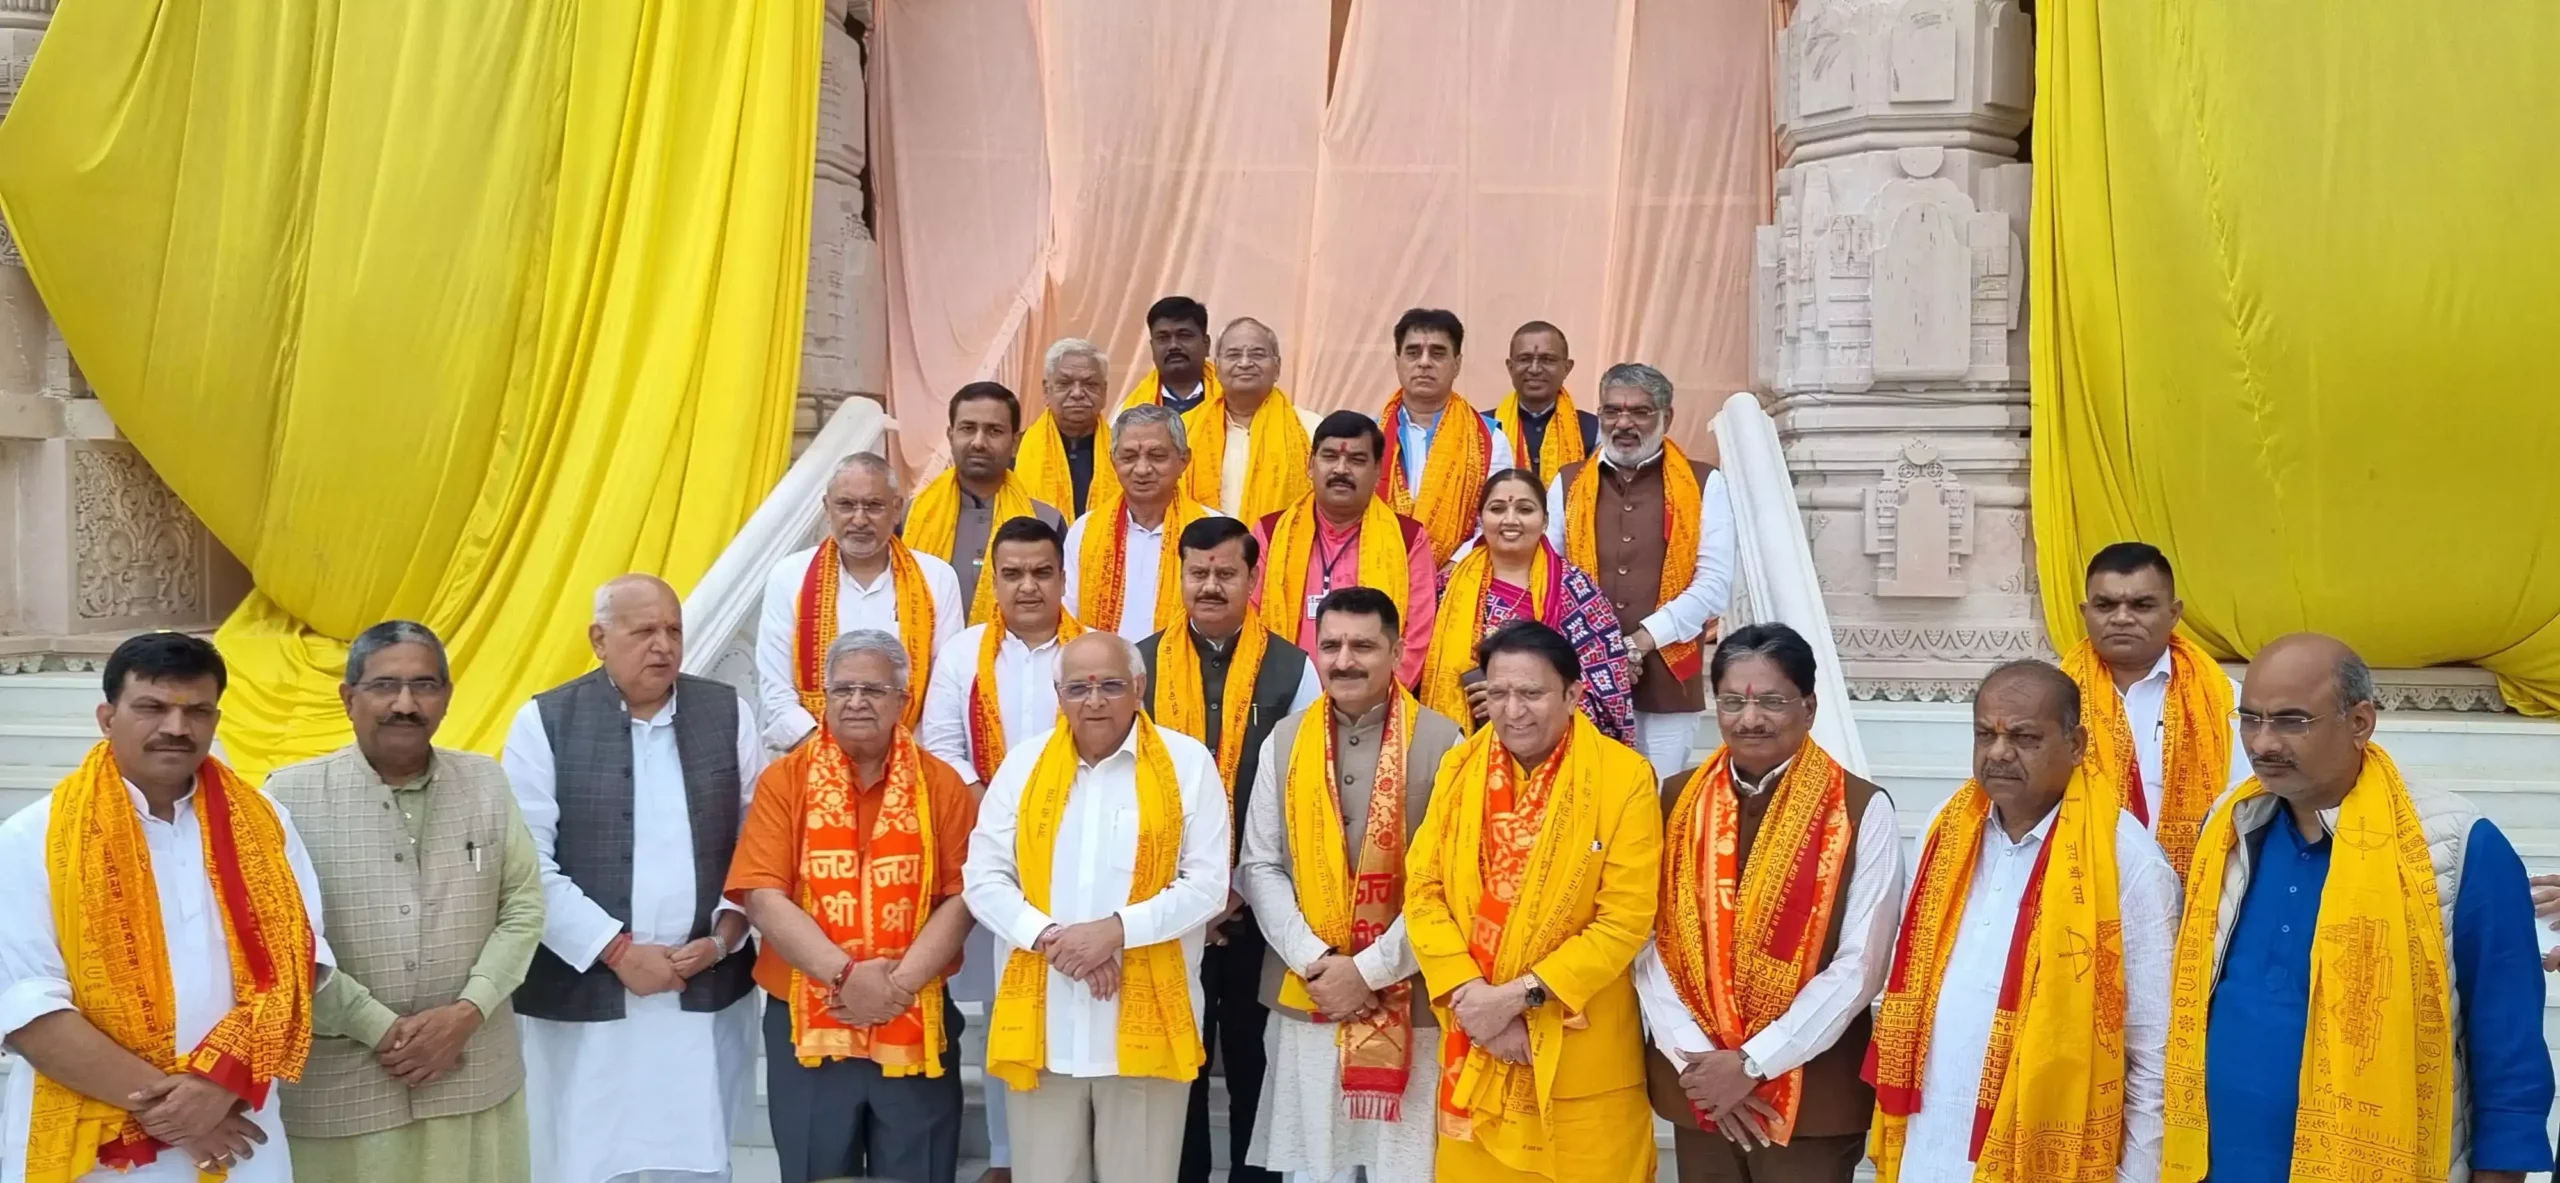 अयोध्या: गुजरात के मुख्यमंत्री पटेल ने अपने मंत्रिमंडल के सदस्यों संग रामलला के दर्शन किये